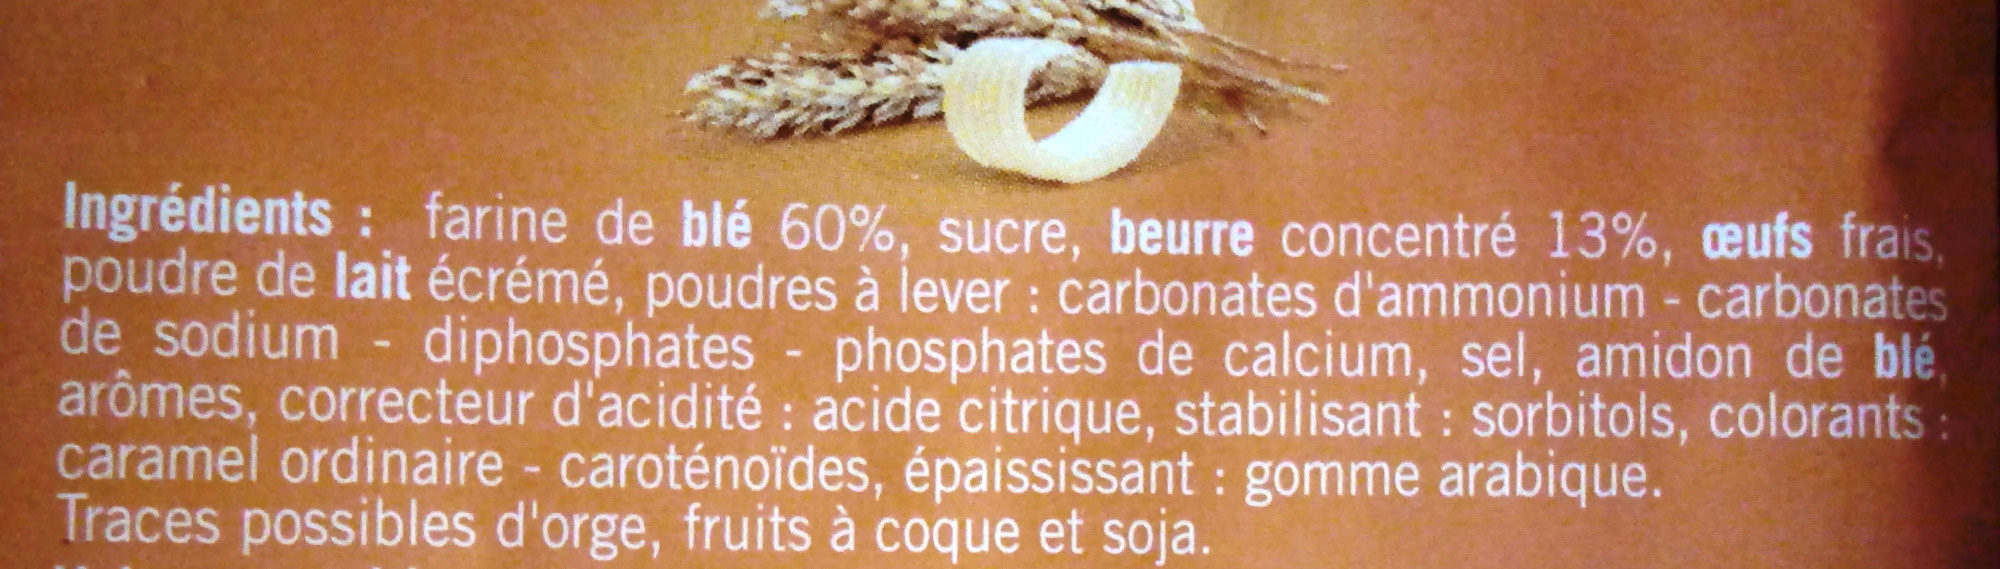 Petit beurre - المكونات - fr